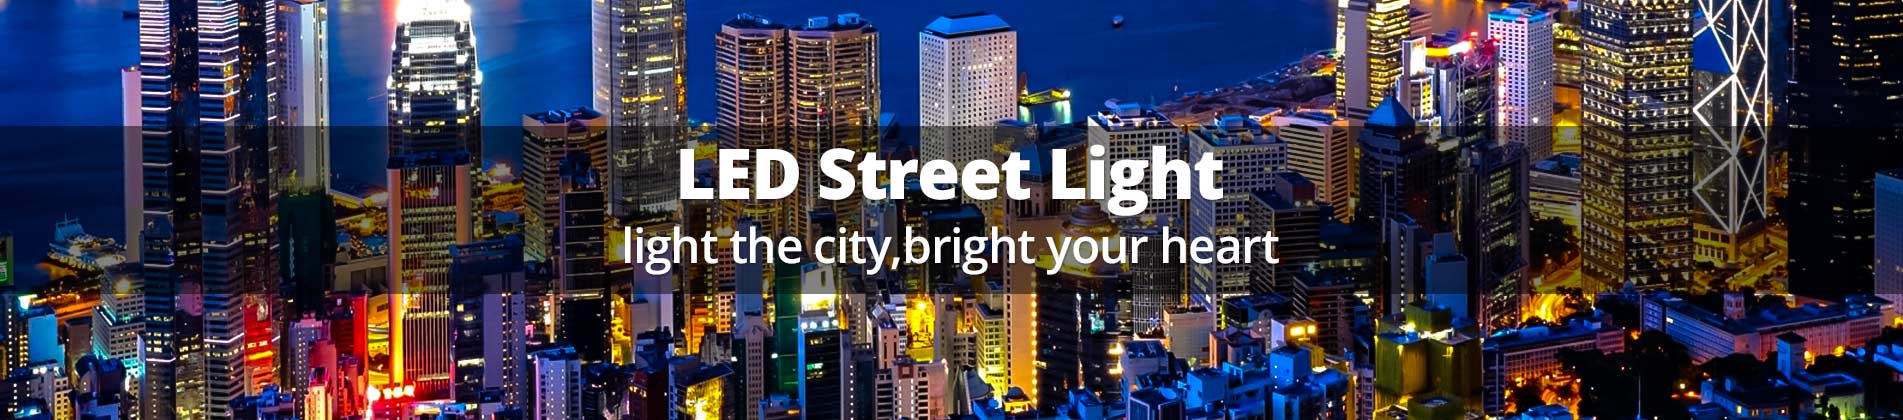 led-street-light-2